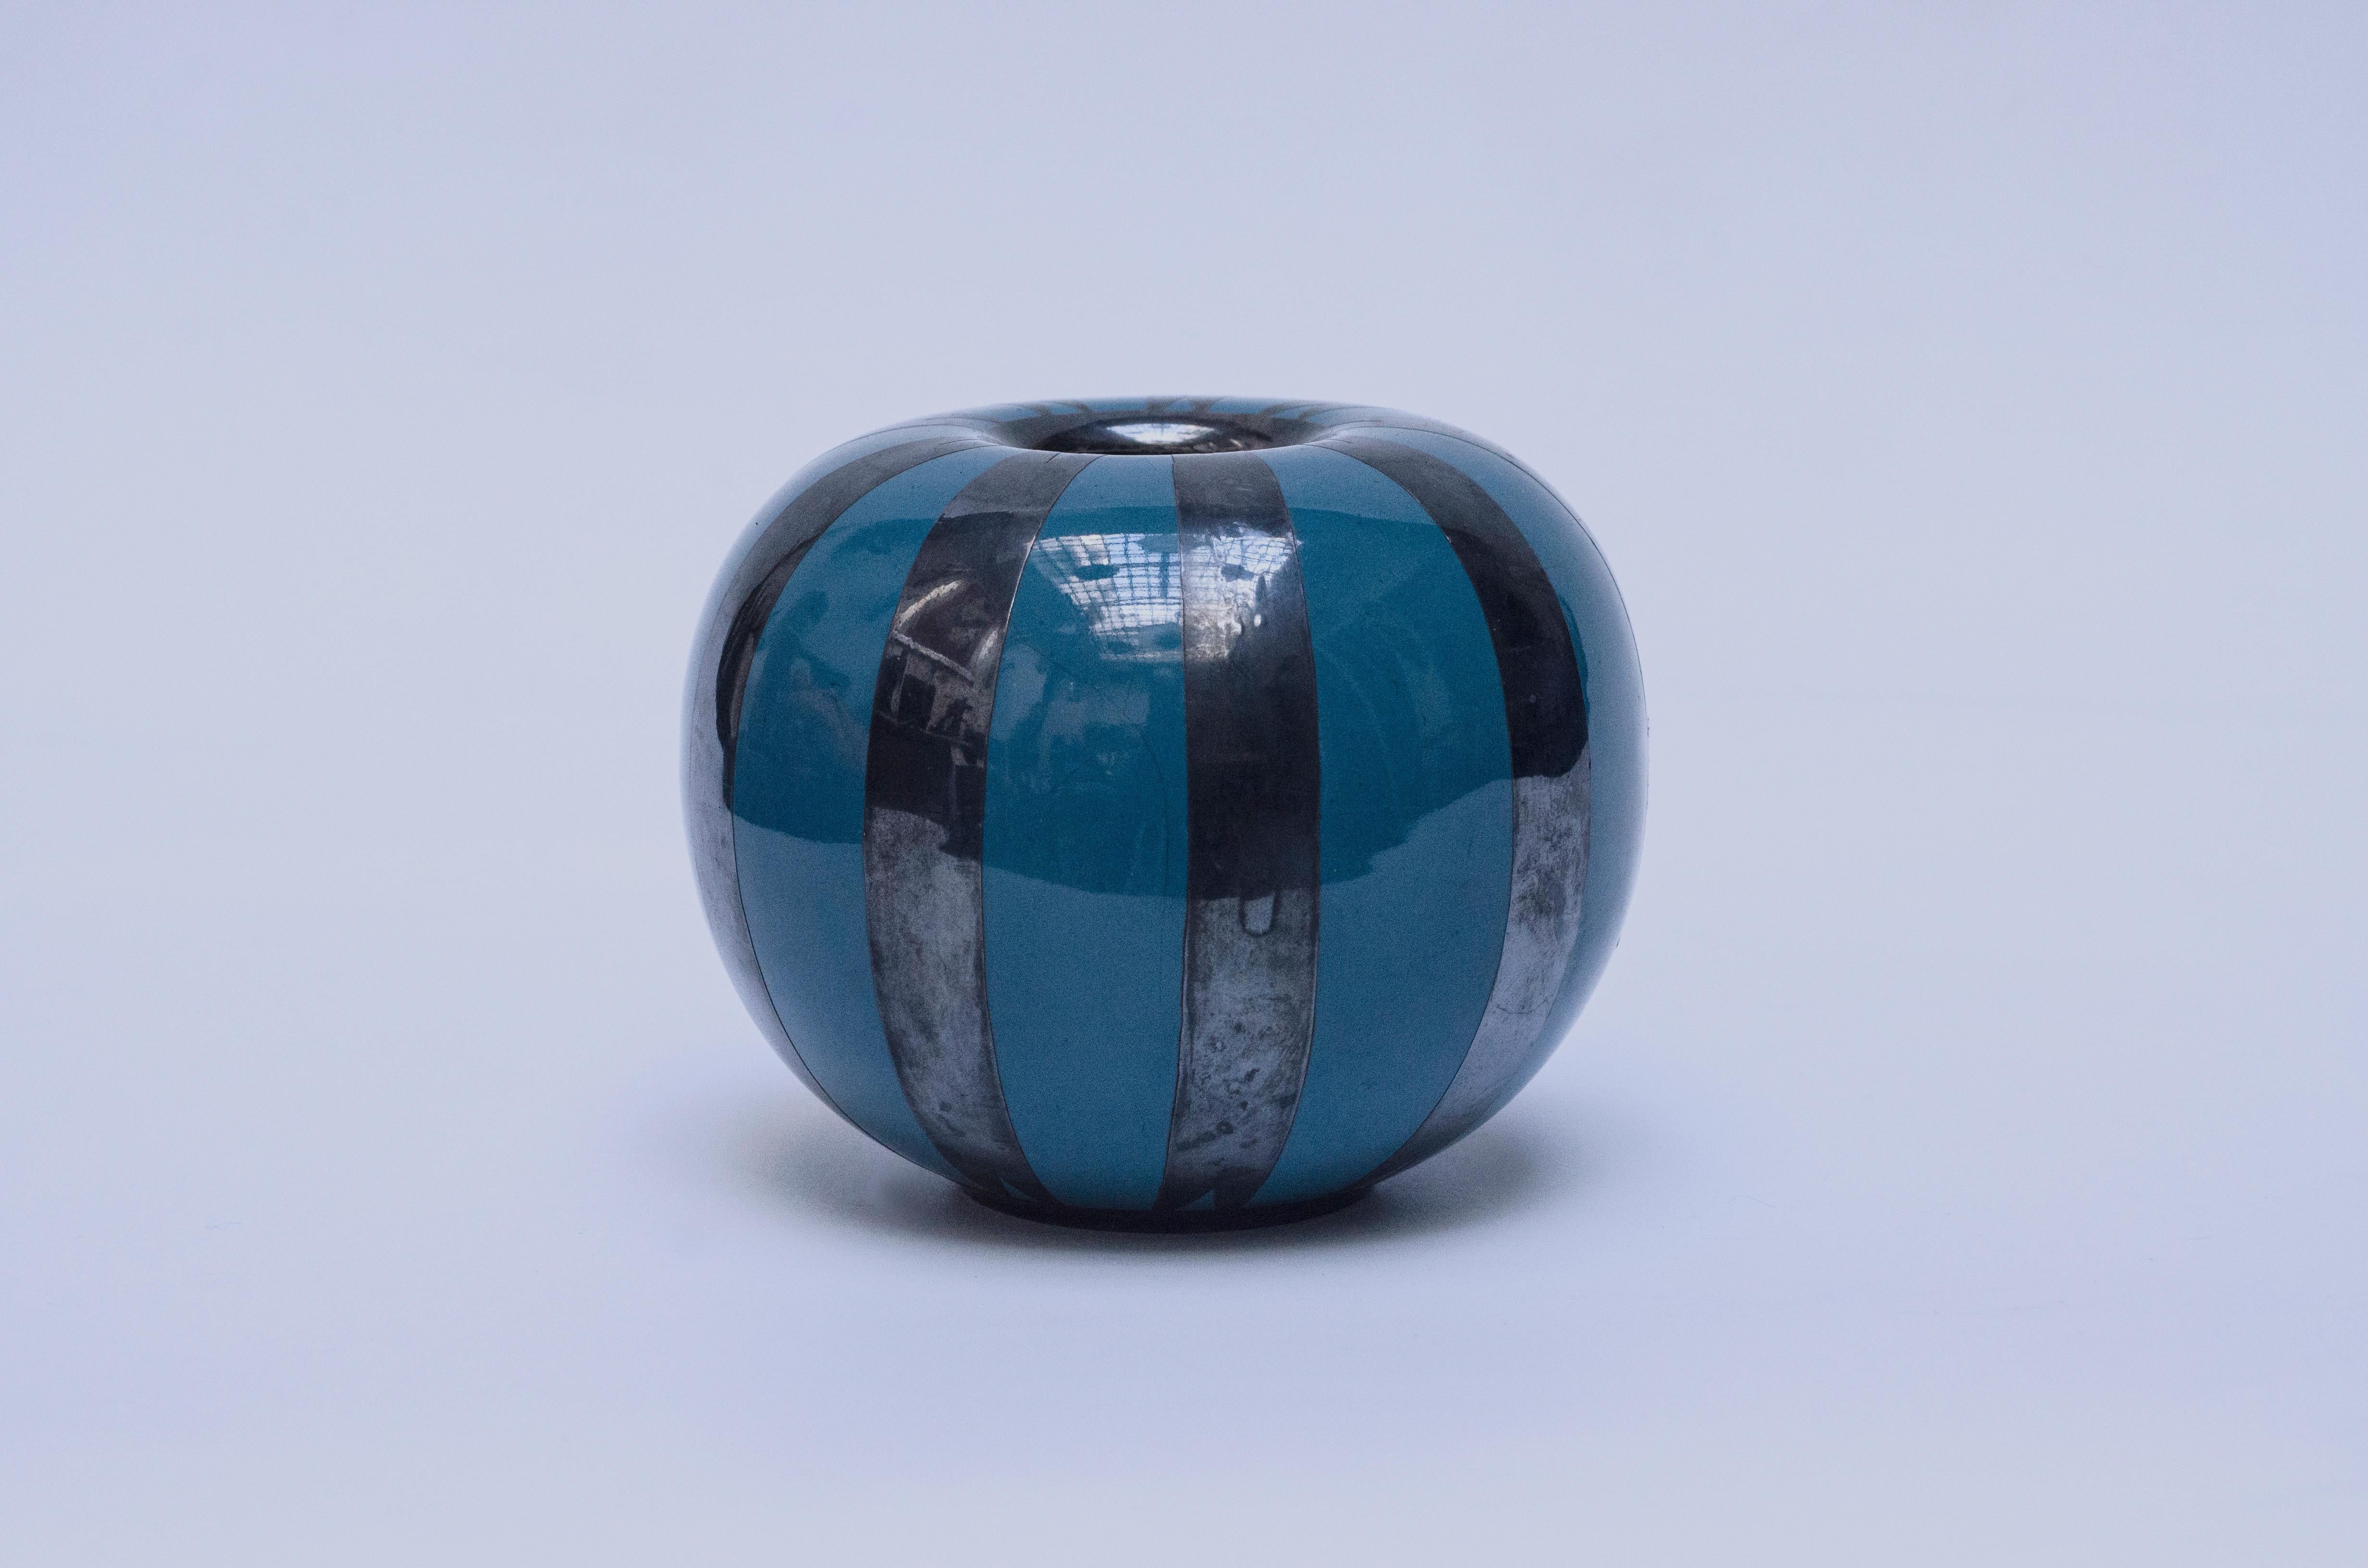 Keramische Vase in blauen Farben mit silbernen Bändern. Hergestellt von der Fabrik Richard Ginori. Unterzeichnung Richard Ginori - M.1710 - M448E.

Italien, CIRCA 1920.